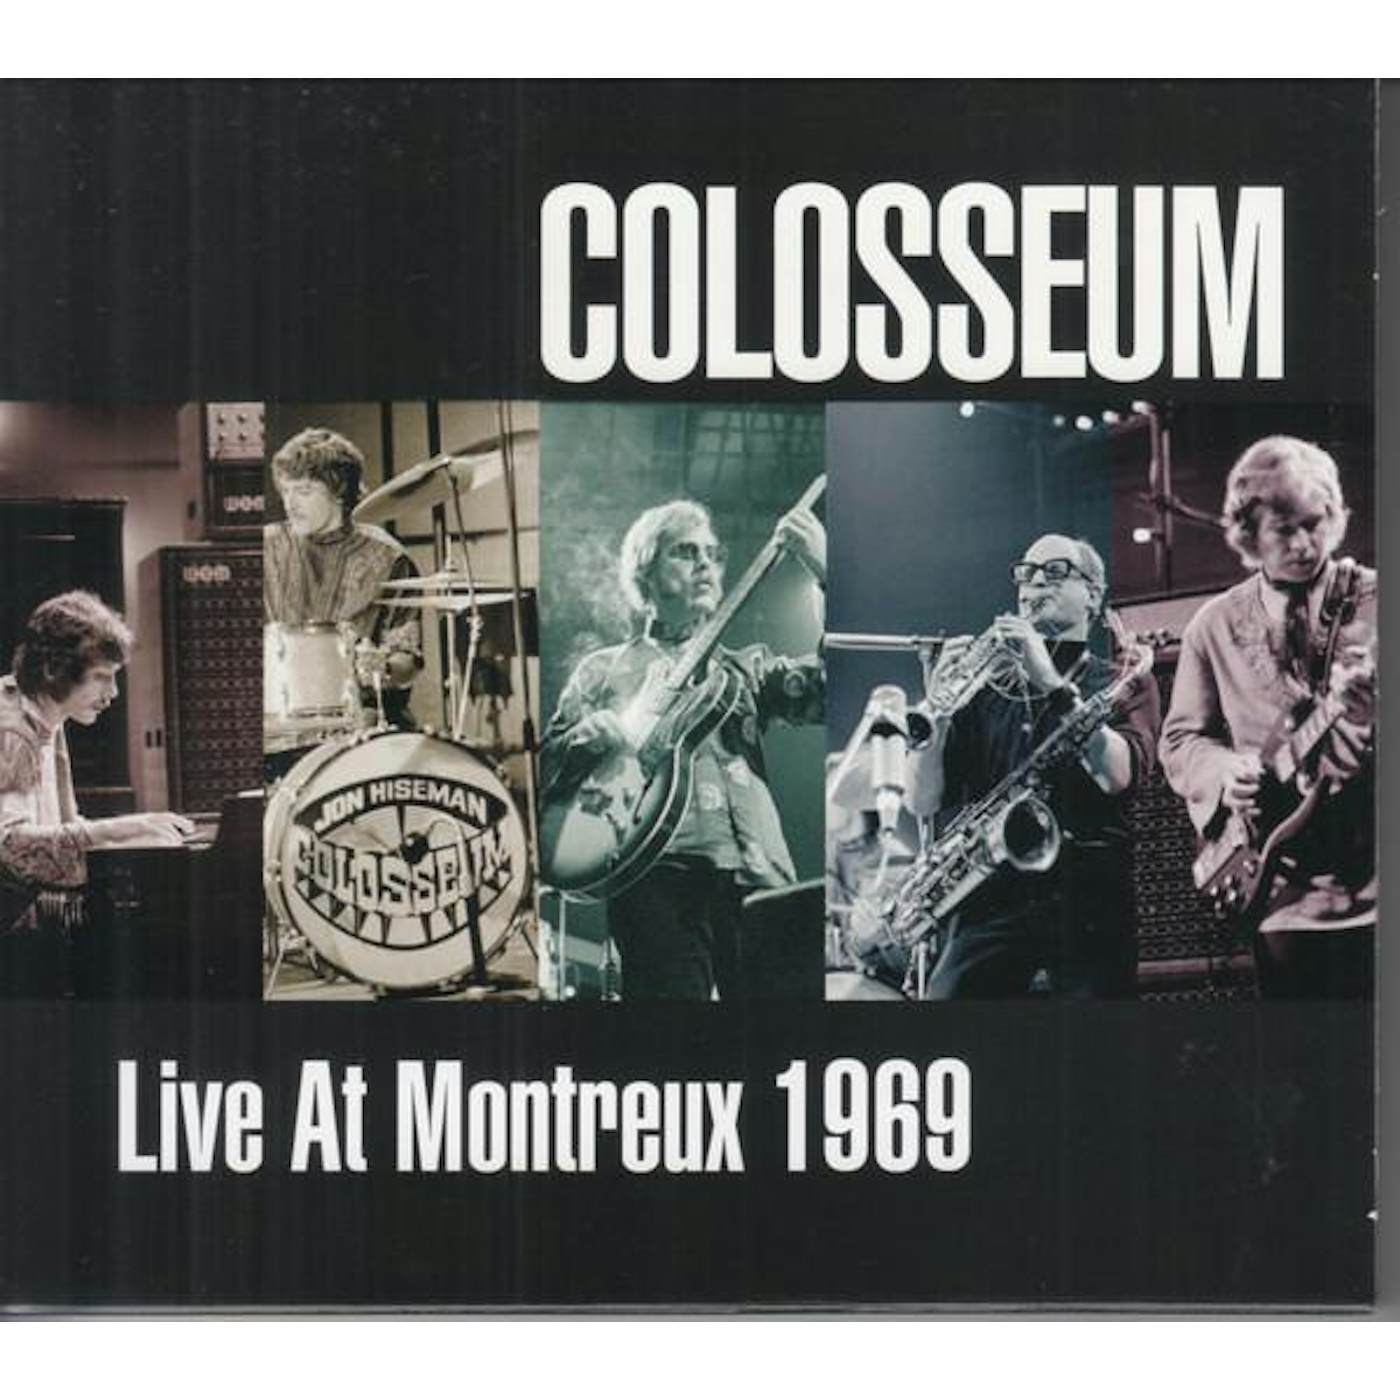 Colosseum Live At Montreux 1969 Vinyl Record